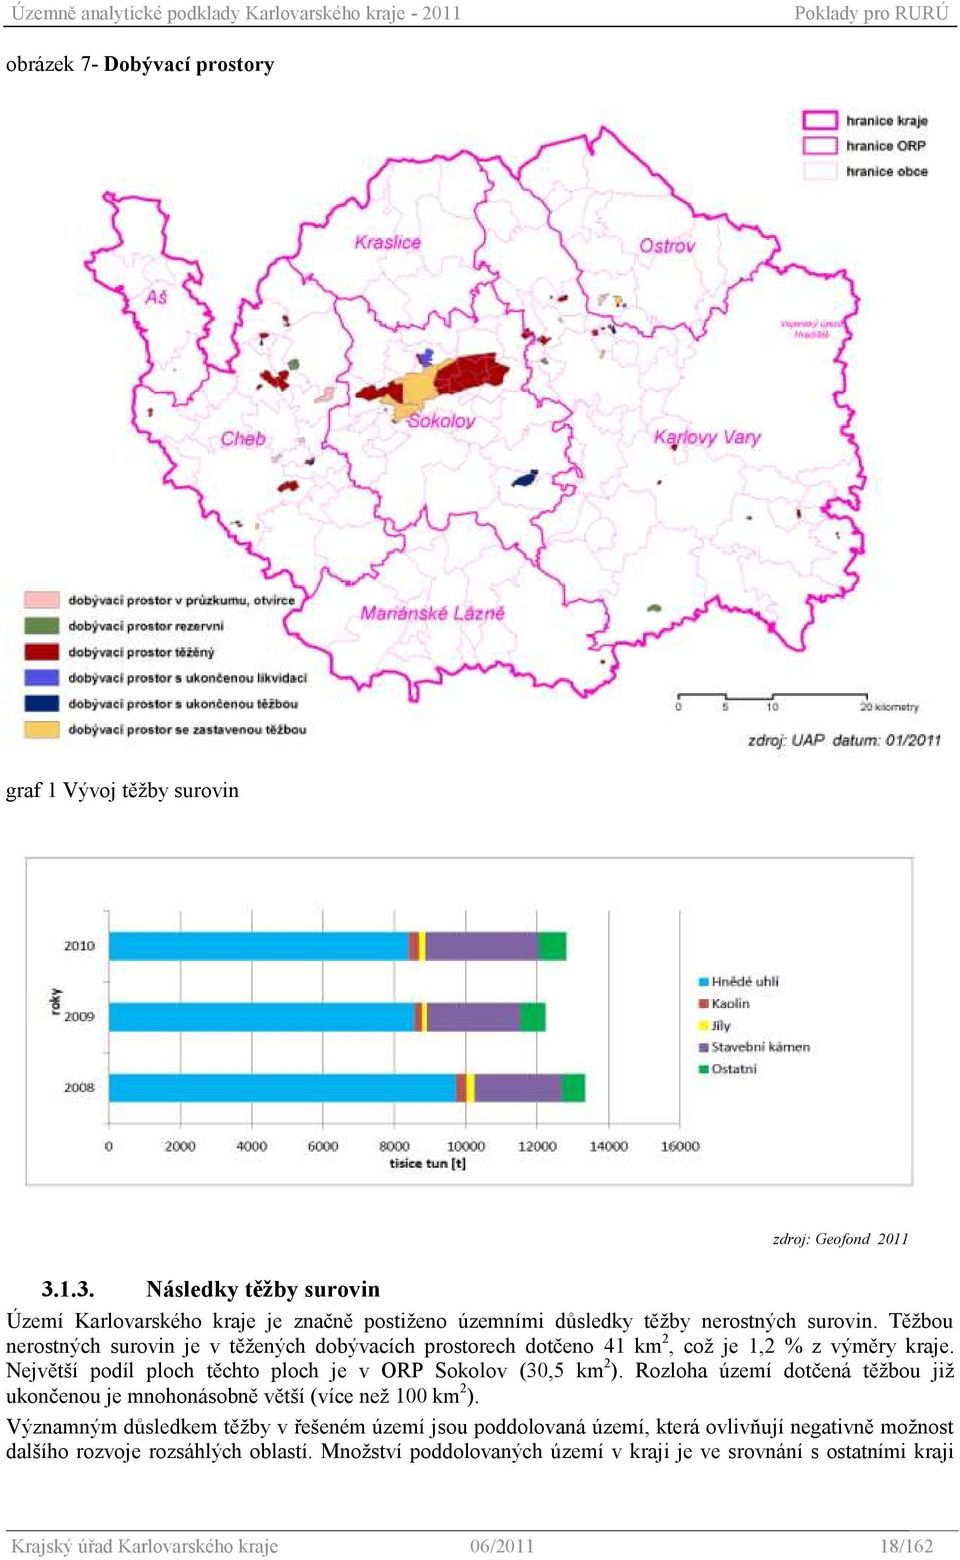 Těţbou nerostných surovin je v těţených dobývacích prostorech dotčeno 41 km 2, coţ je 1,2 % z výměry kraje. Největší podíl ploch těchto ploch je v ORP Sokolov (30,5 km 2 ).